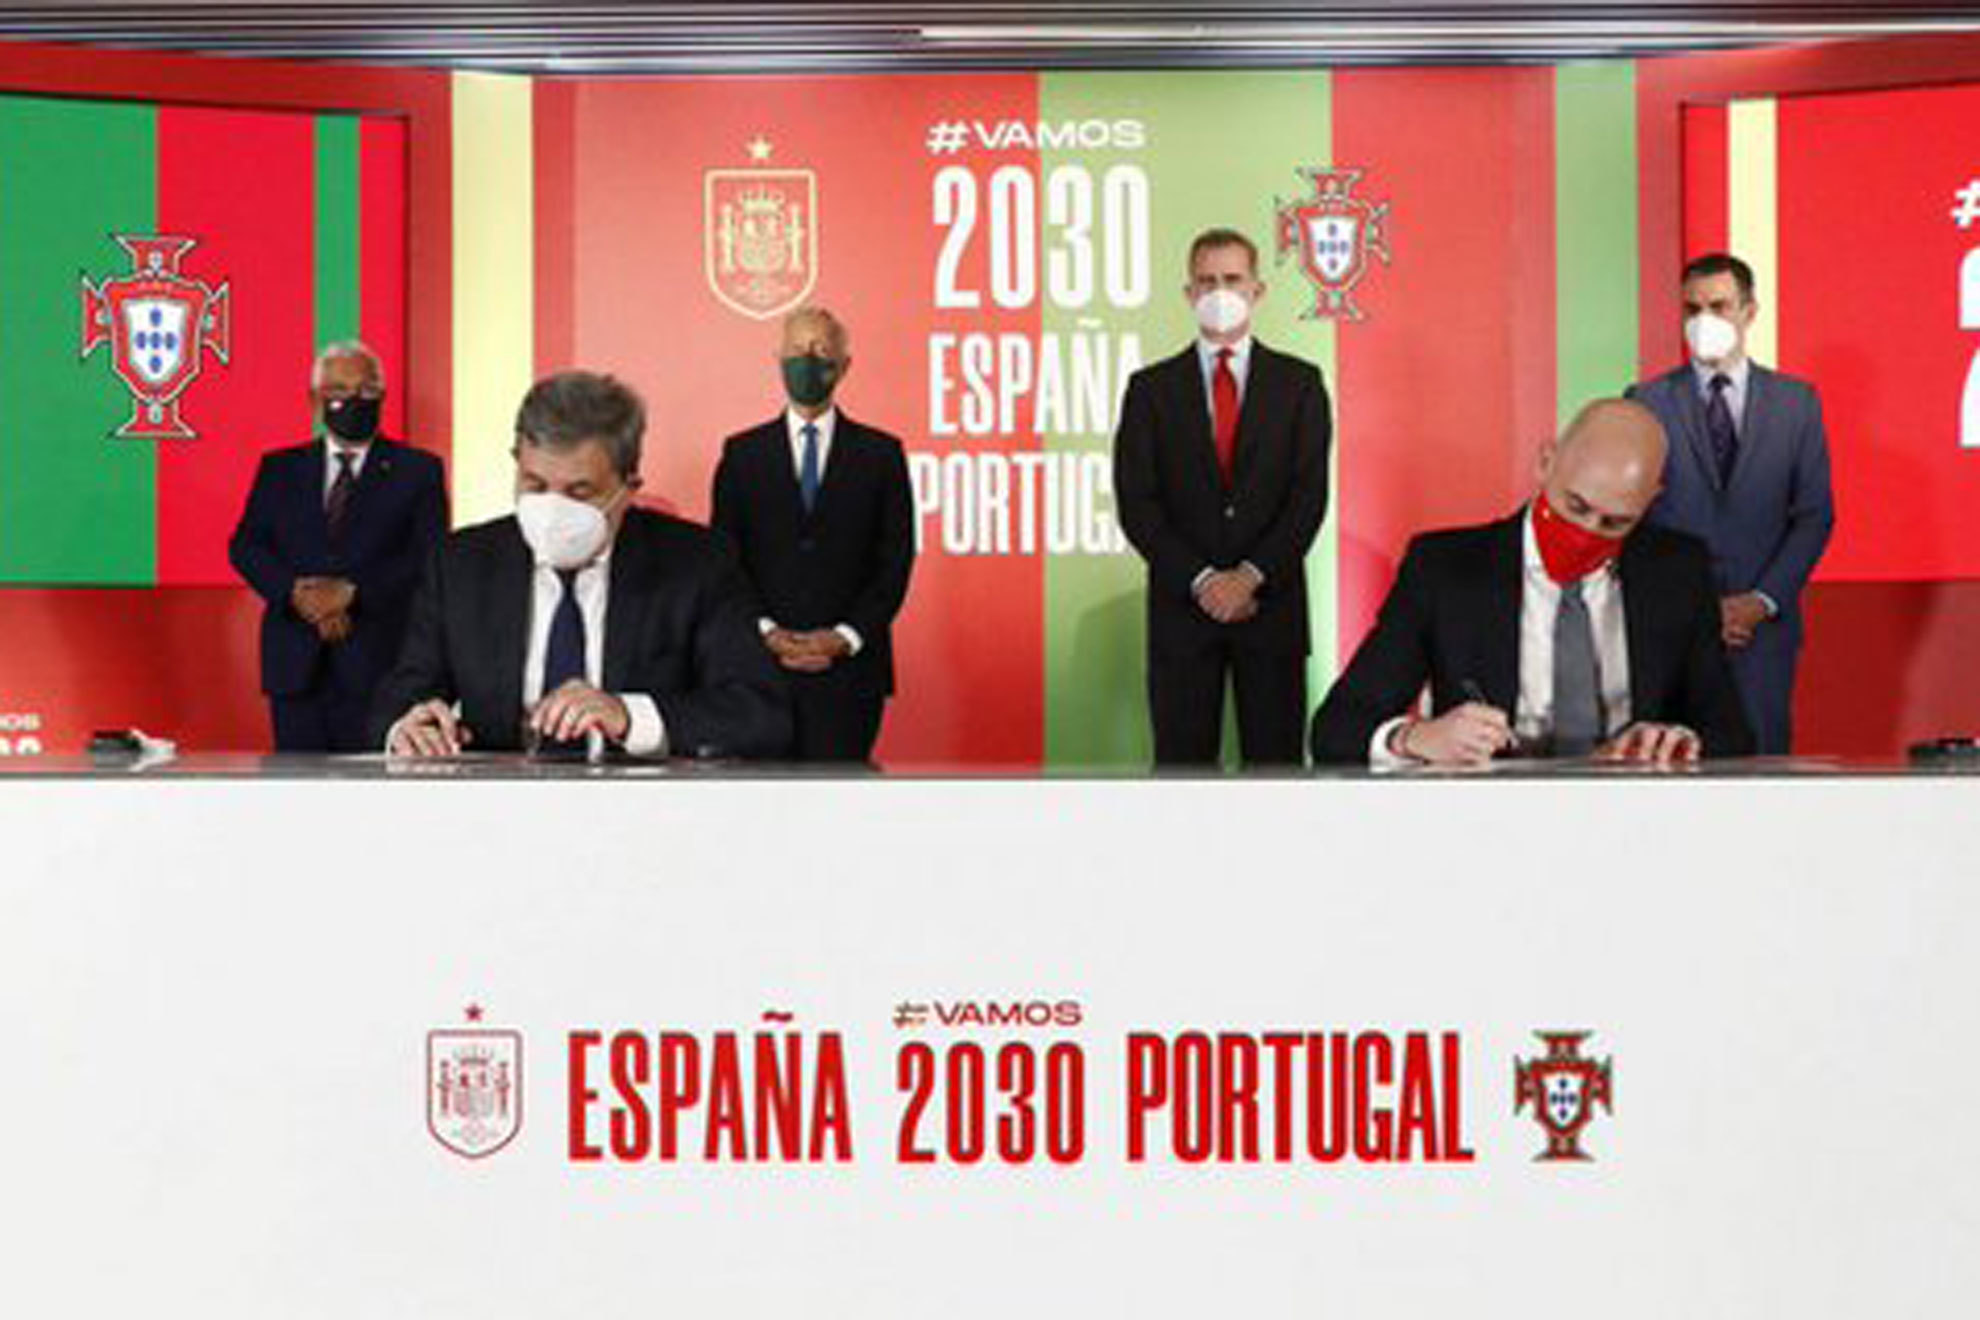 La jugada maestra de Espaa y Portugal para llevarse el Mundial 2030